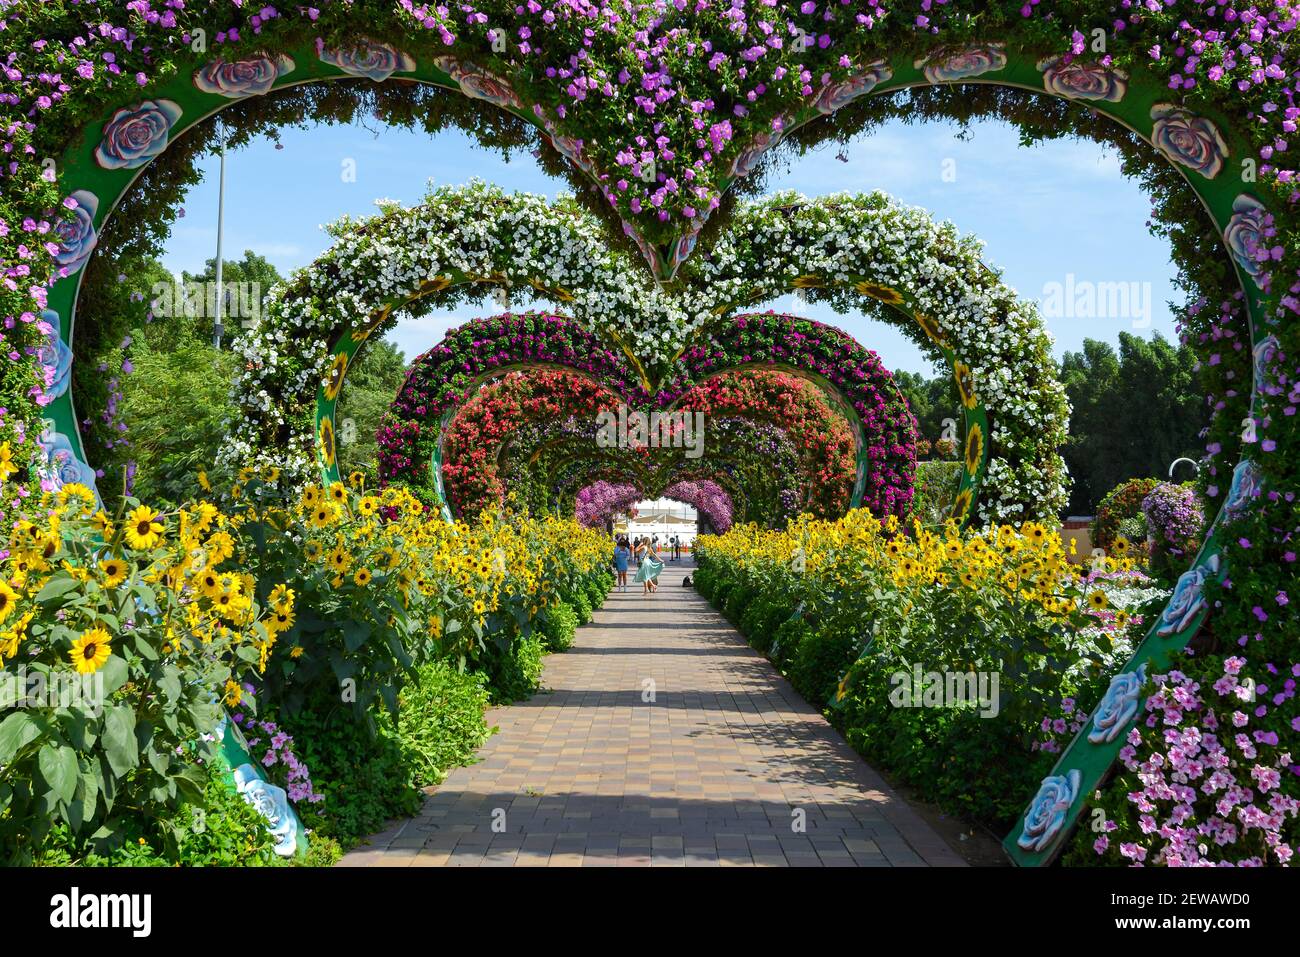 Flower Hearts passageway en Dubai Miracle Garden, un pasaje de flores situado en Dubai, Emiratos Árabes Unidos. Colorido túnel de flores en forma de corazón. Foto de stock